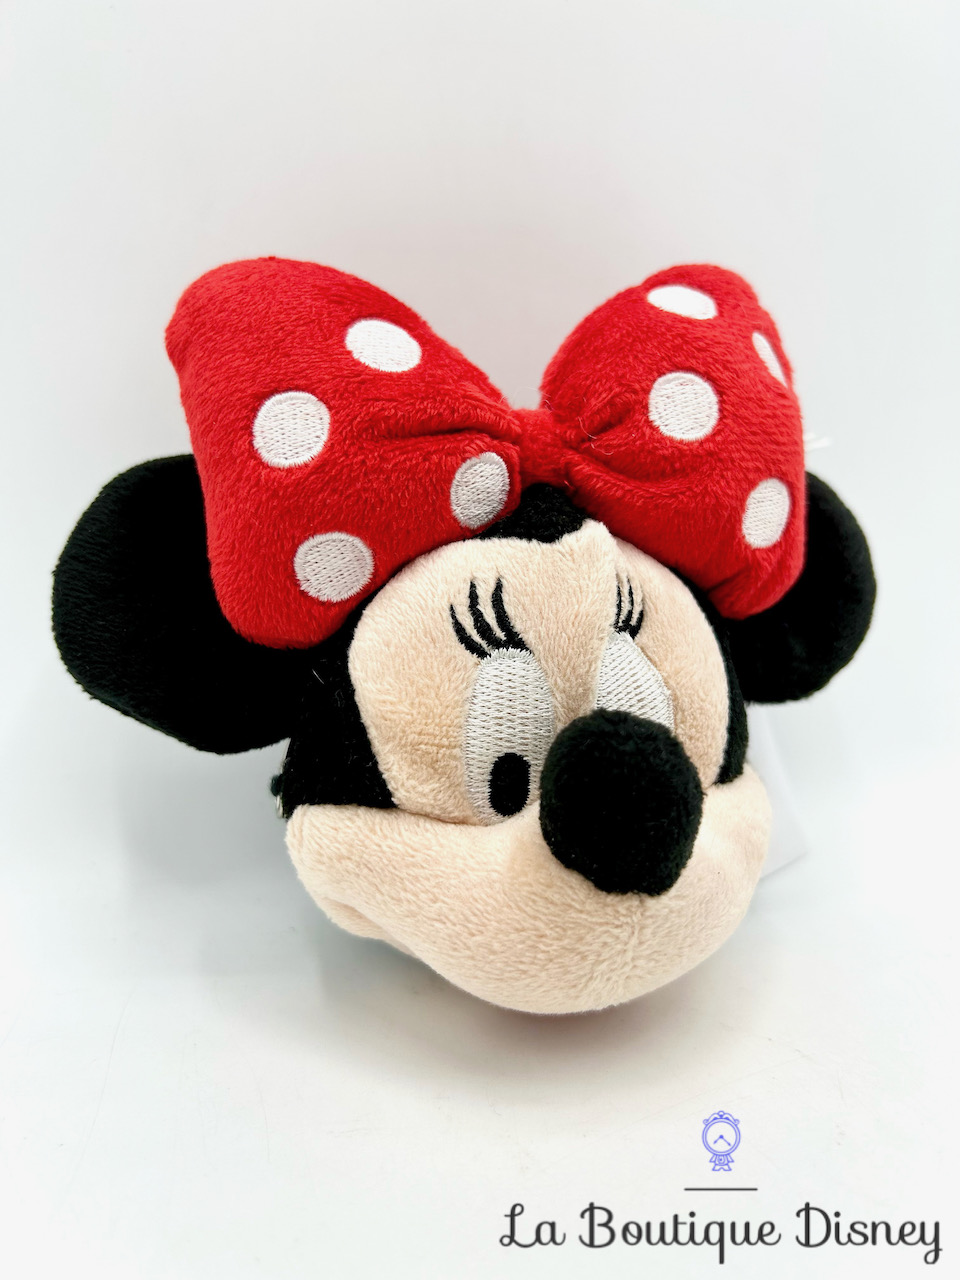 Porte monnaie Minne Mouse Disneyland Paris Disney tête noeud rouge pois blancs